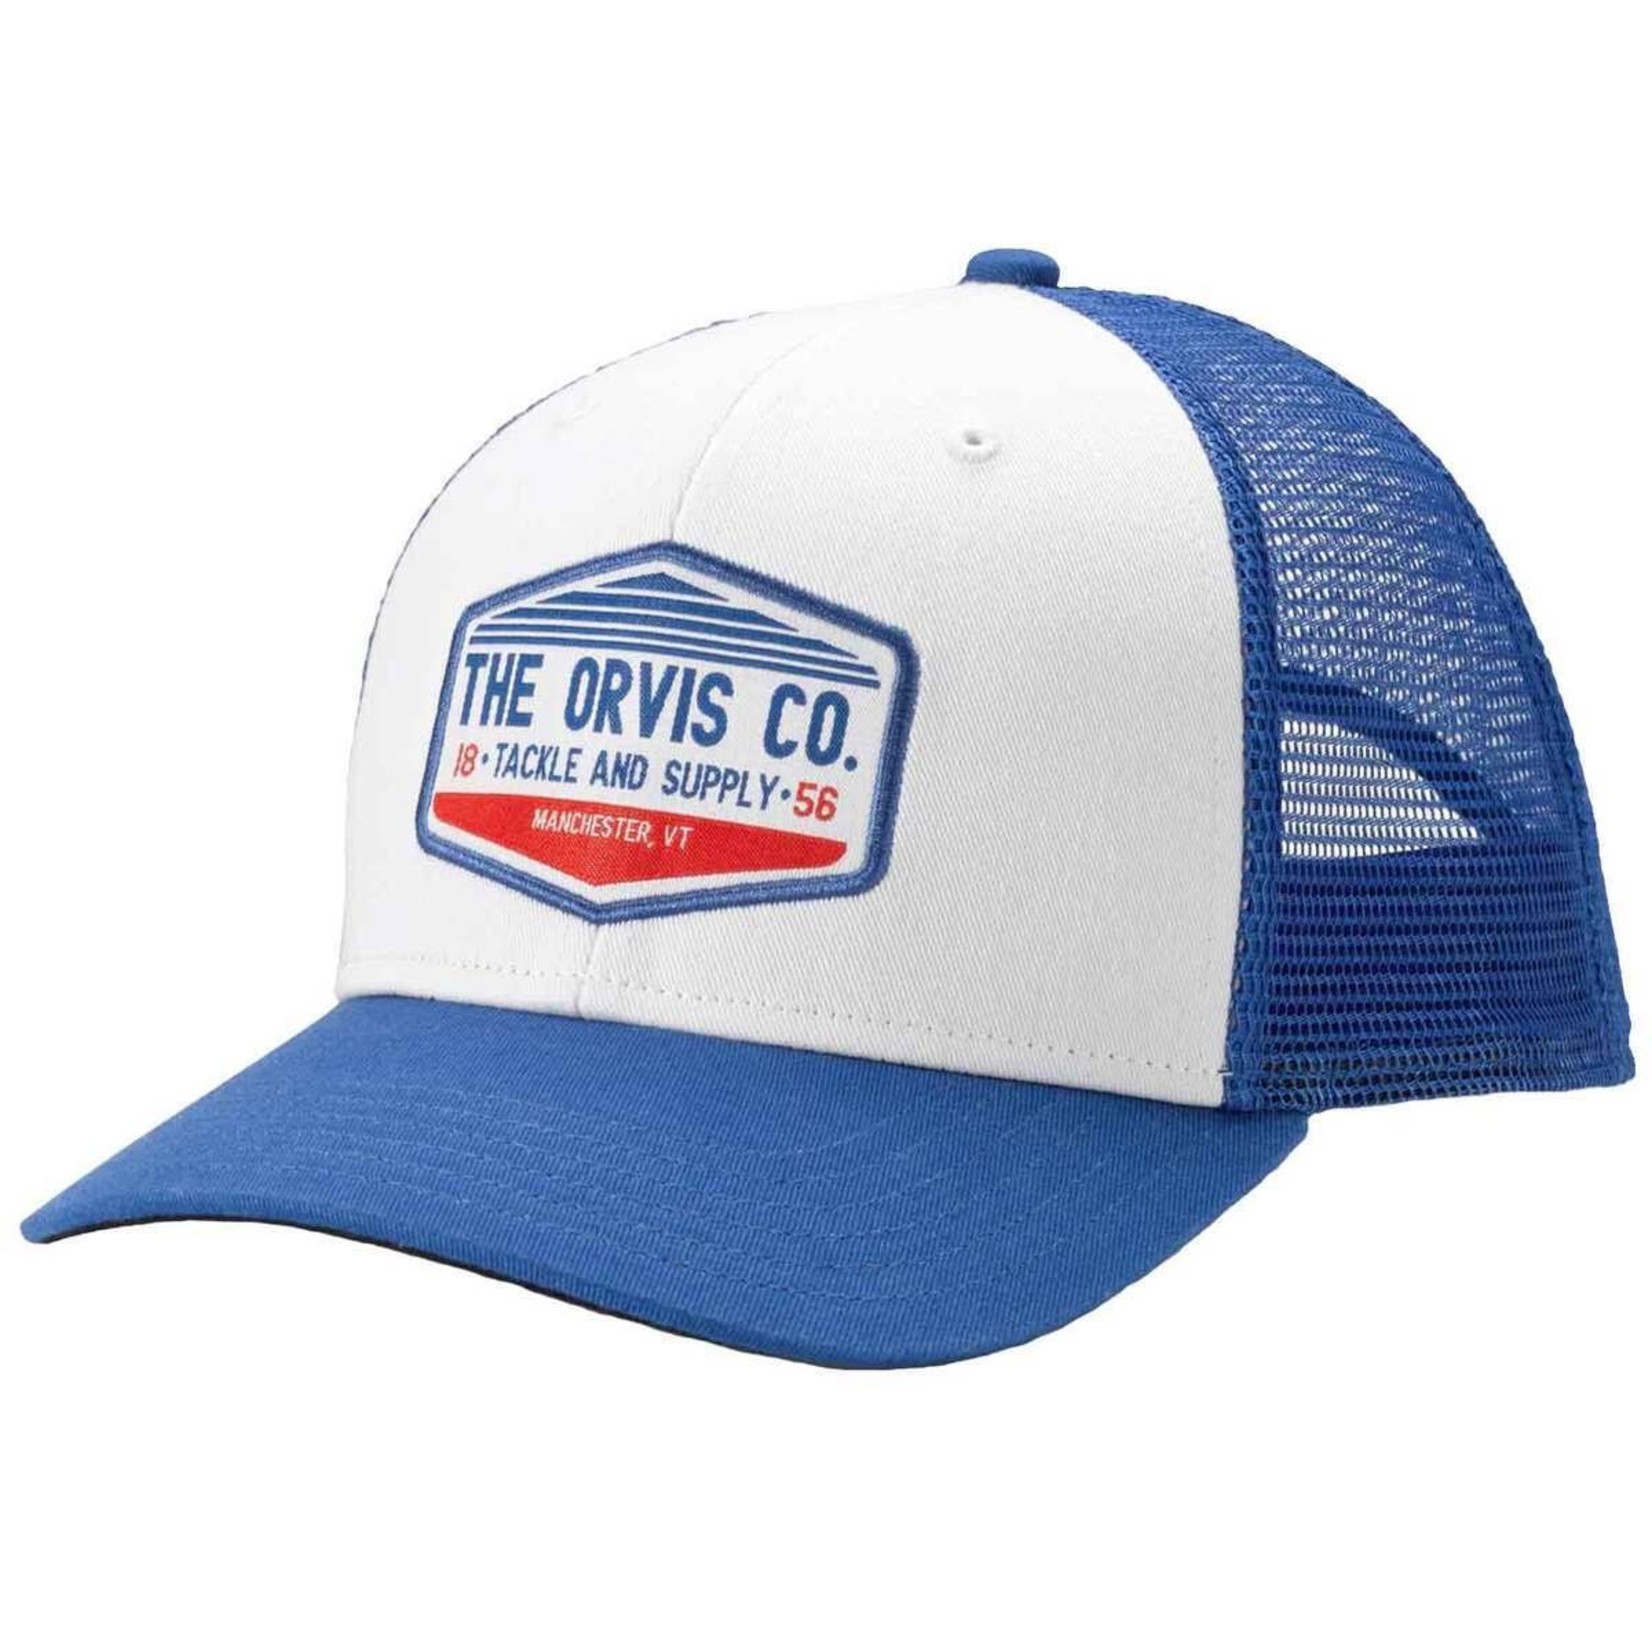 https://cdn.shoplightspeed.com/shops/656066/files/46374086/1652x1652x2/orvis-orvis-rocky-river-trucker-hat.jpg